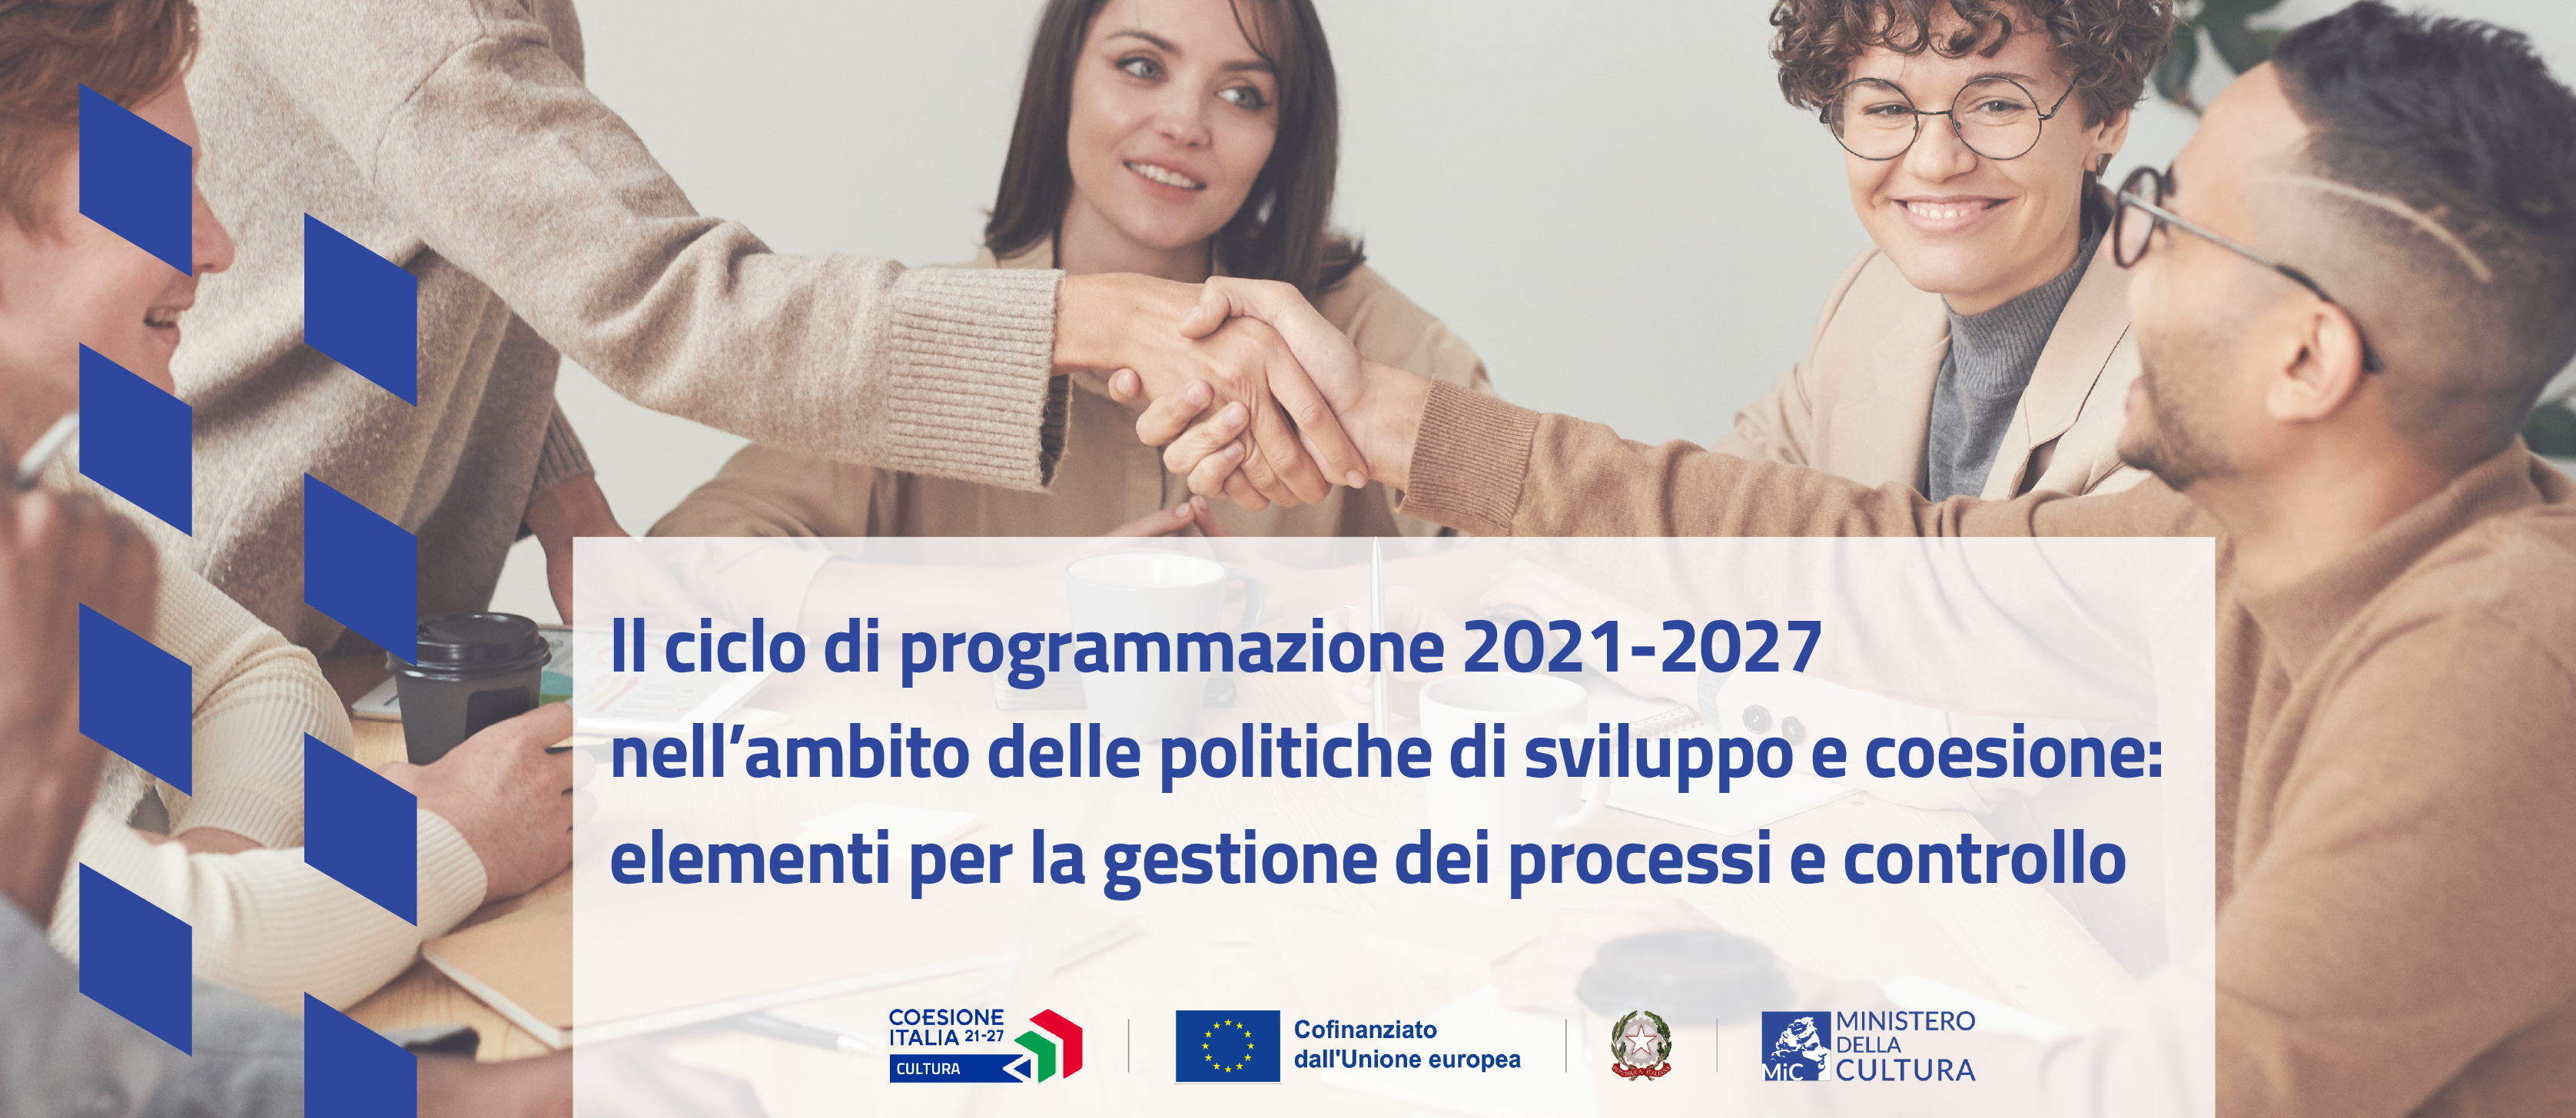 ll ciclo di programmazione 2021-2027 nell’ambito delle politiche di sviluppo e coesione